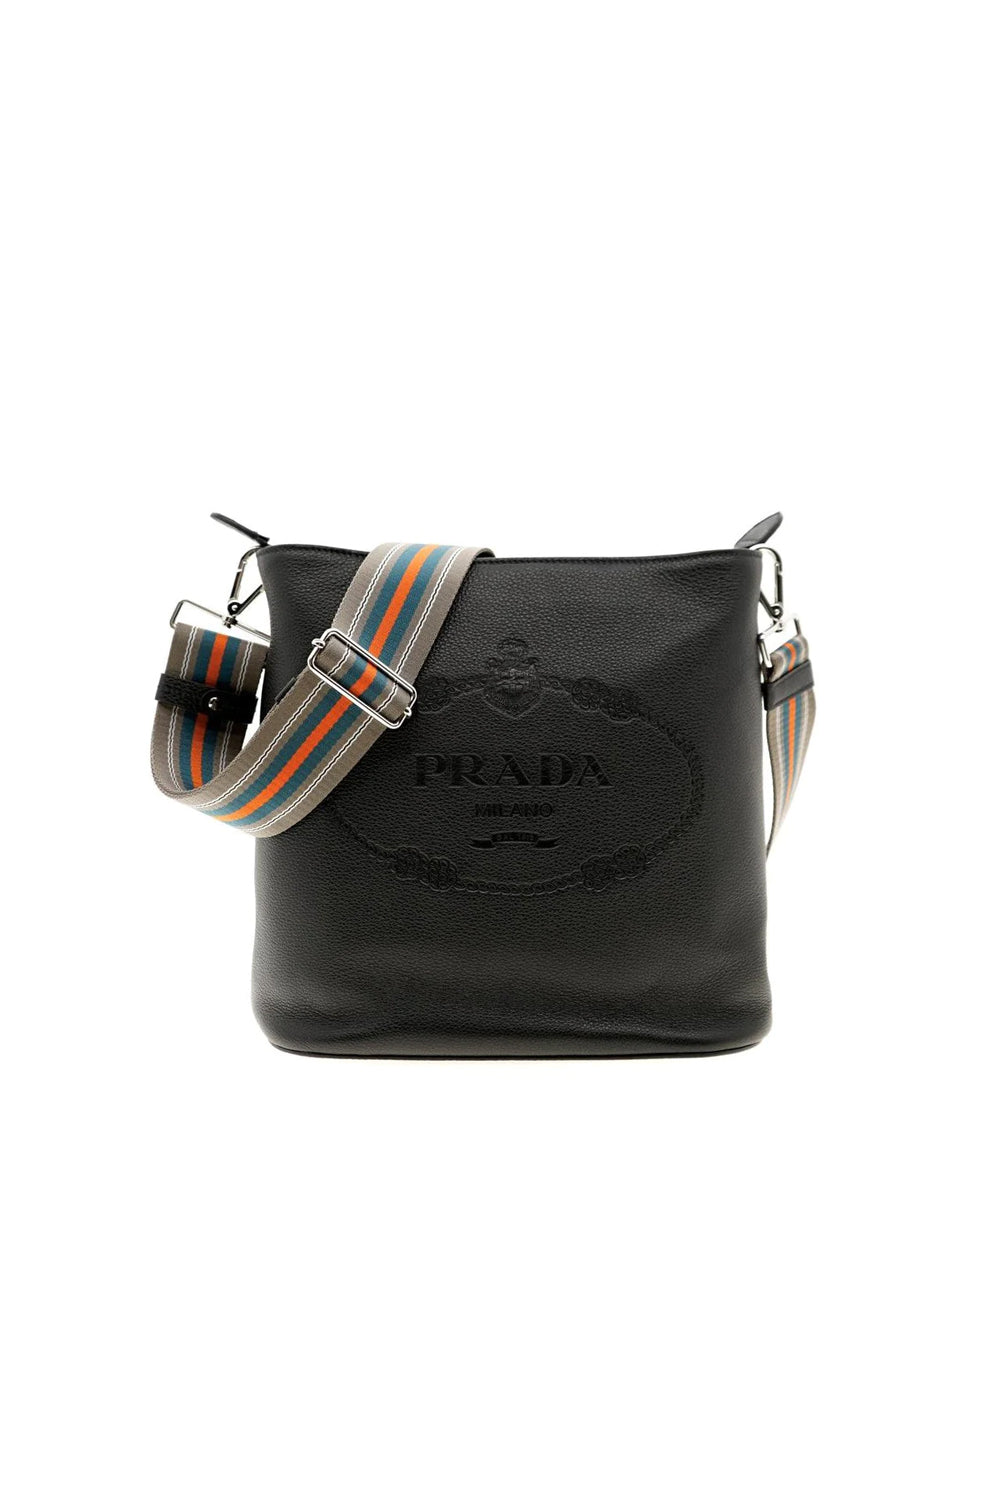 Prada Vitello Phenix Stripe Strap Bucket Bag